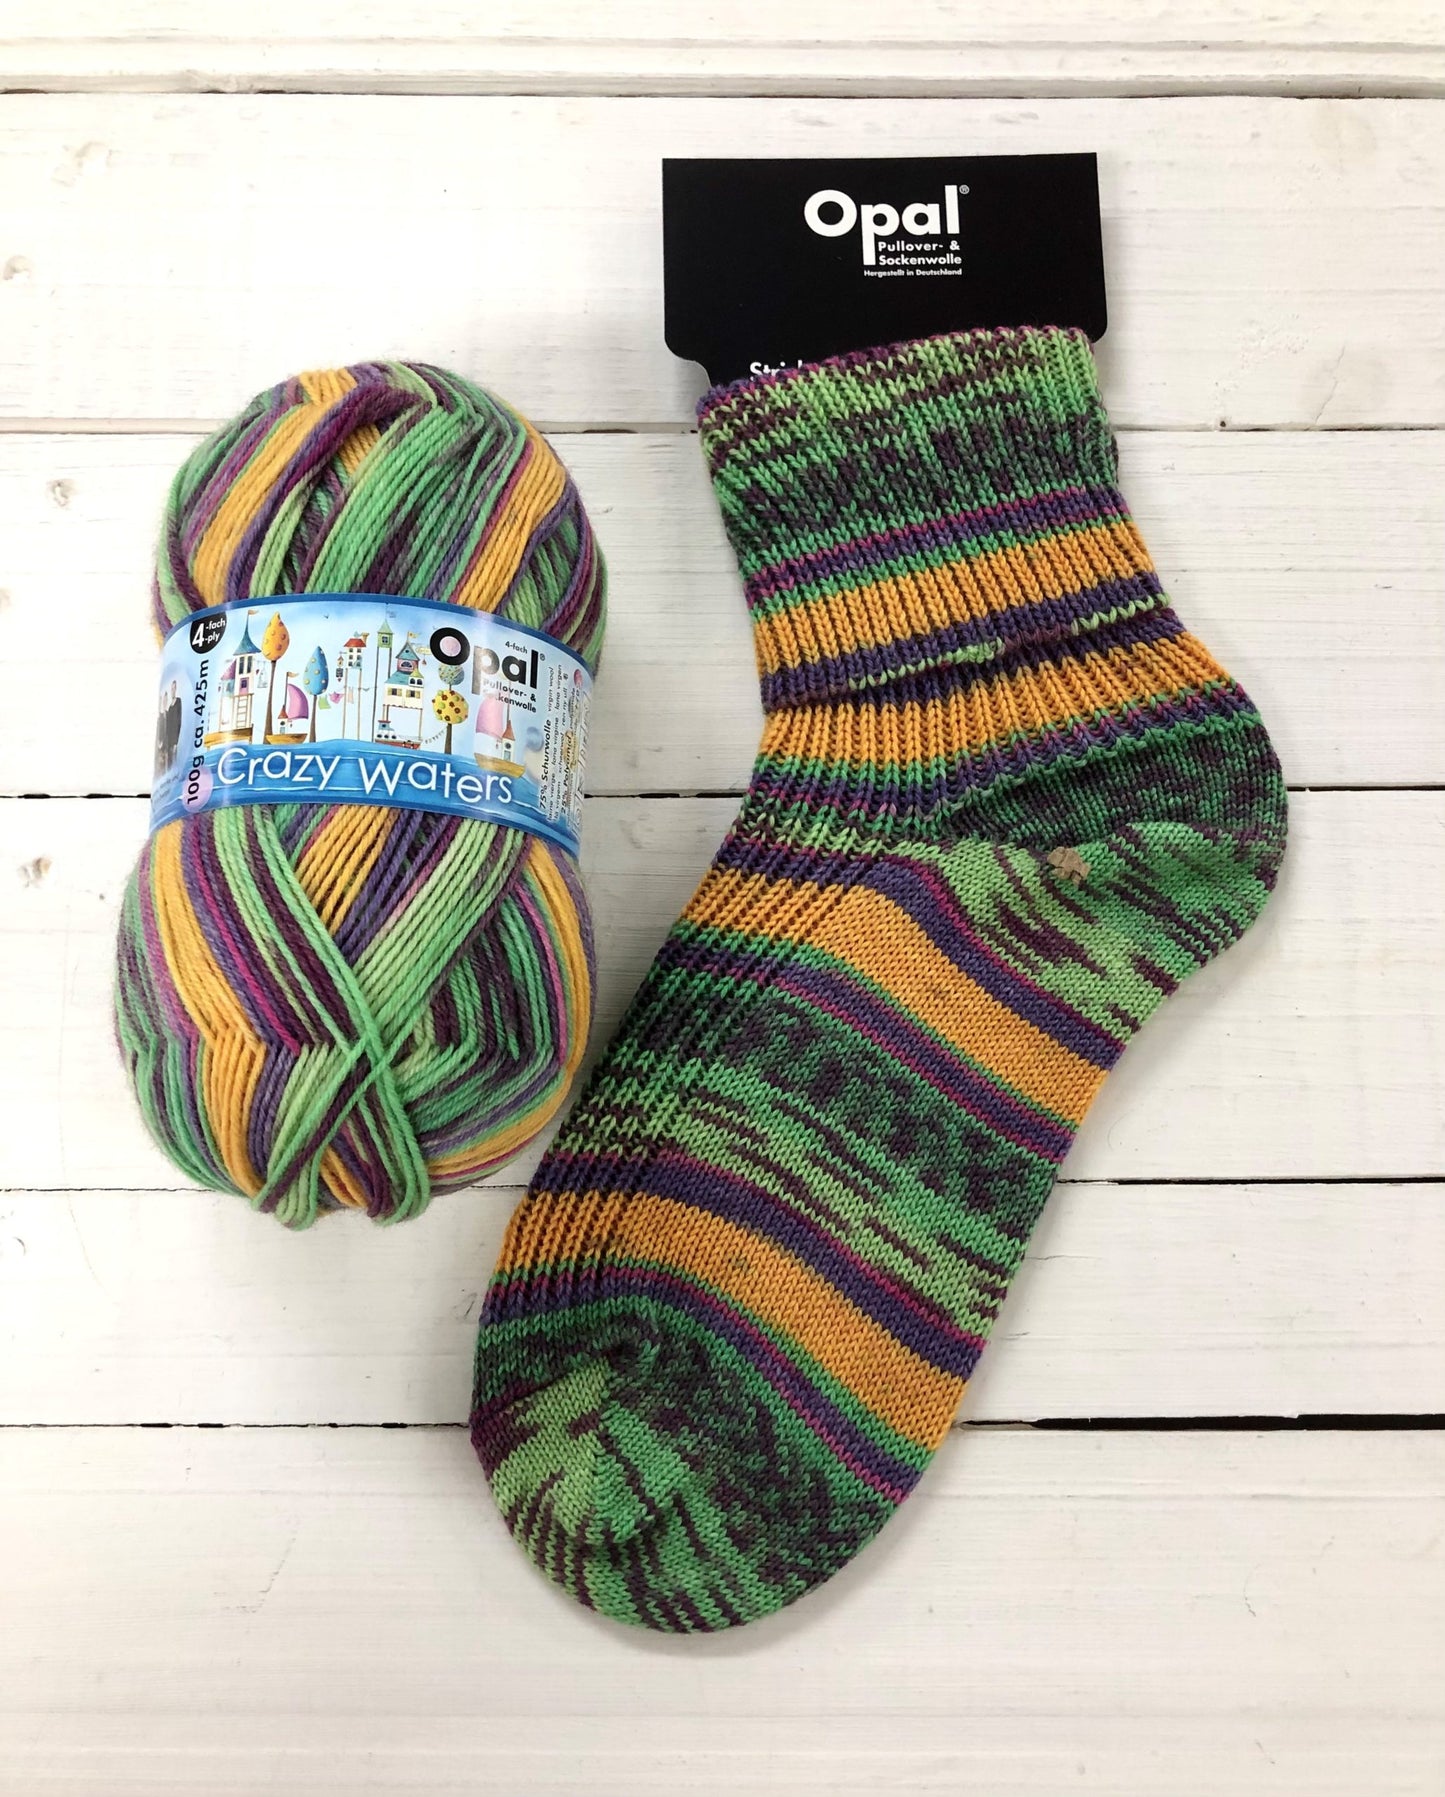 11313 - Green, yellow and purple self striping sock